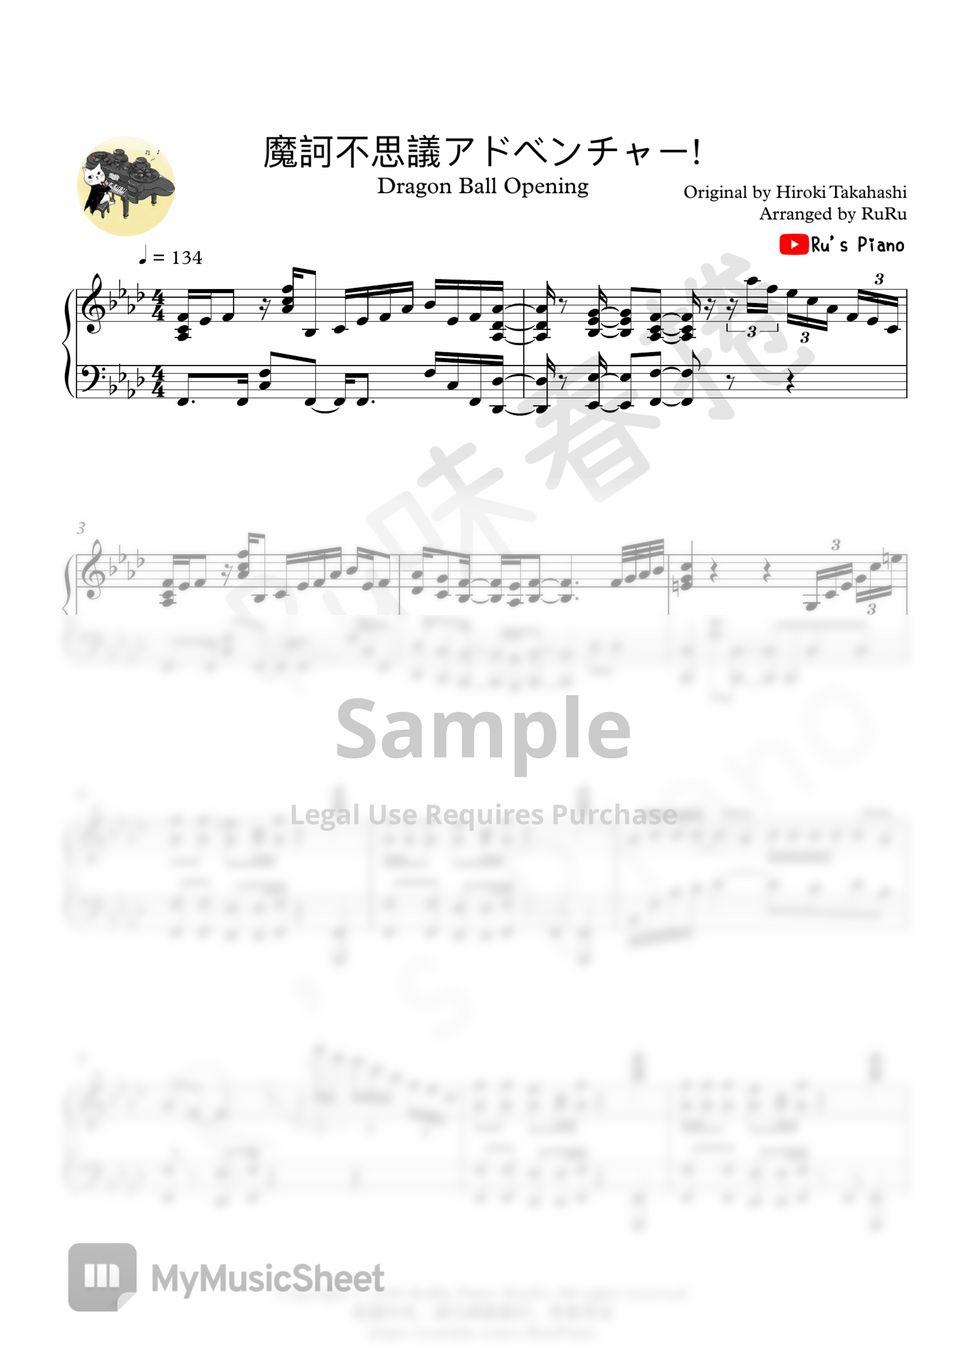 Dragon Ball OP - 魔訶不思議アドベンチャー! (Makafushigi Adve) by Ru's Piano